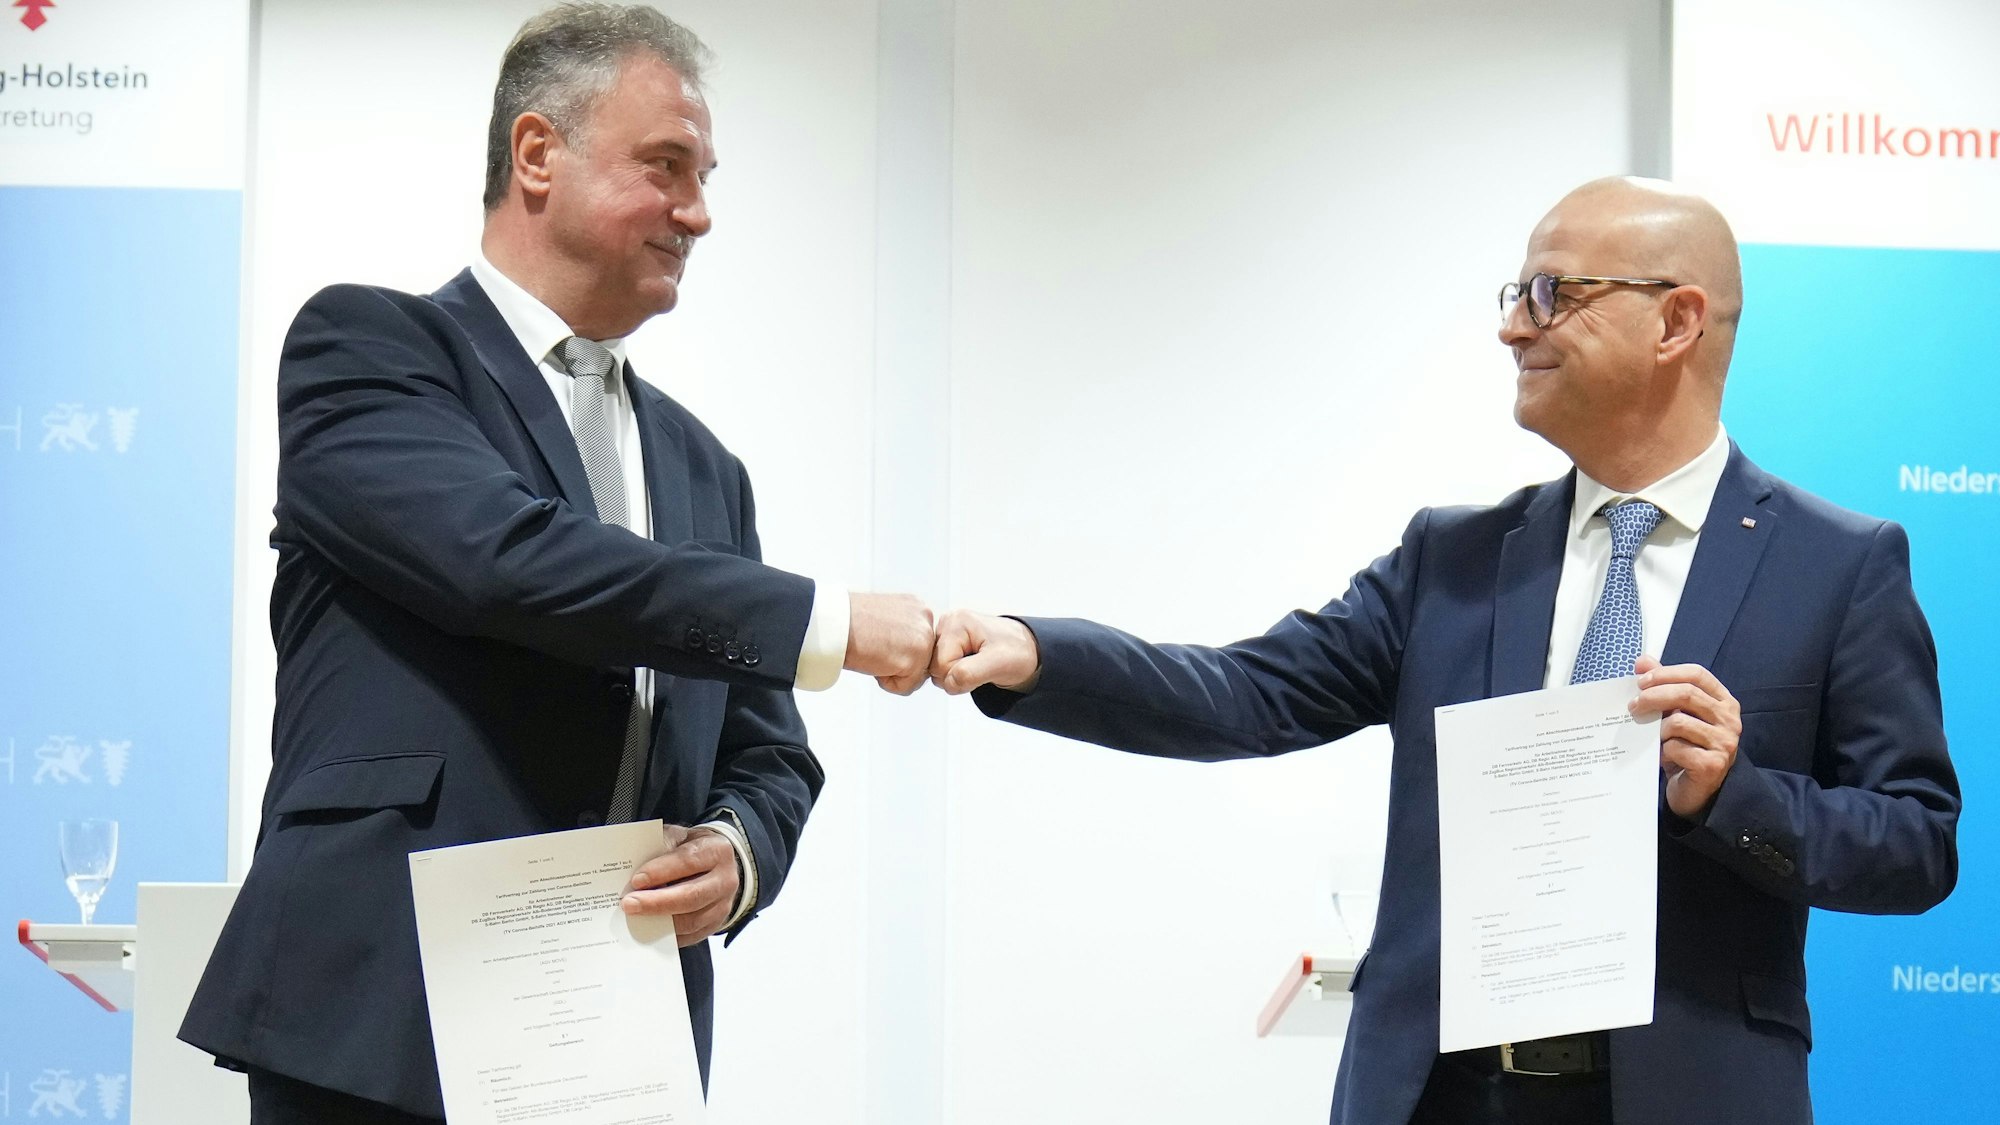 Kennen sich schon länger: DB-Personalvorstand Martin Seiler (r.) und GDL-Chef Claus Weselsky, hier beim Abschluss eines Tarifvertrags im September 2021.